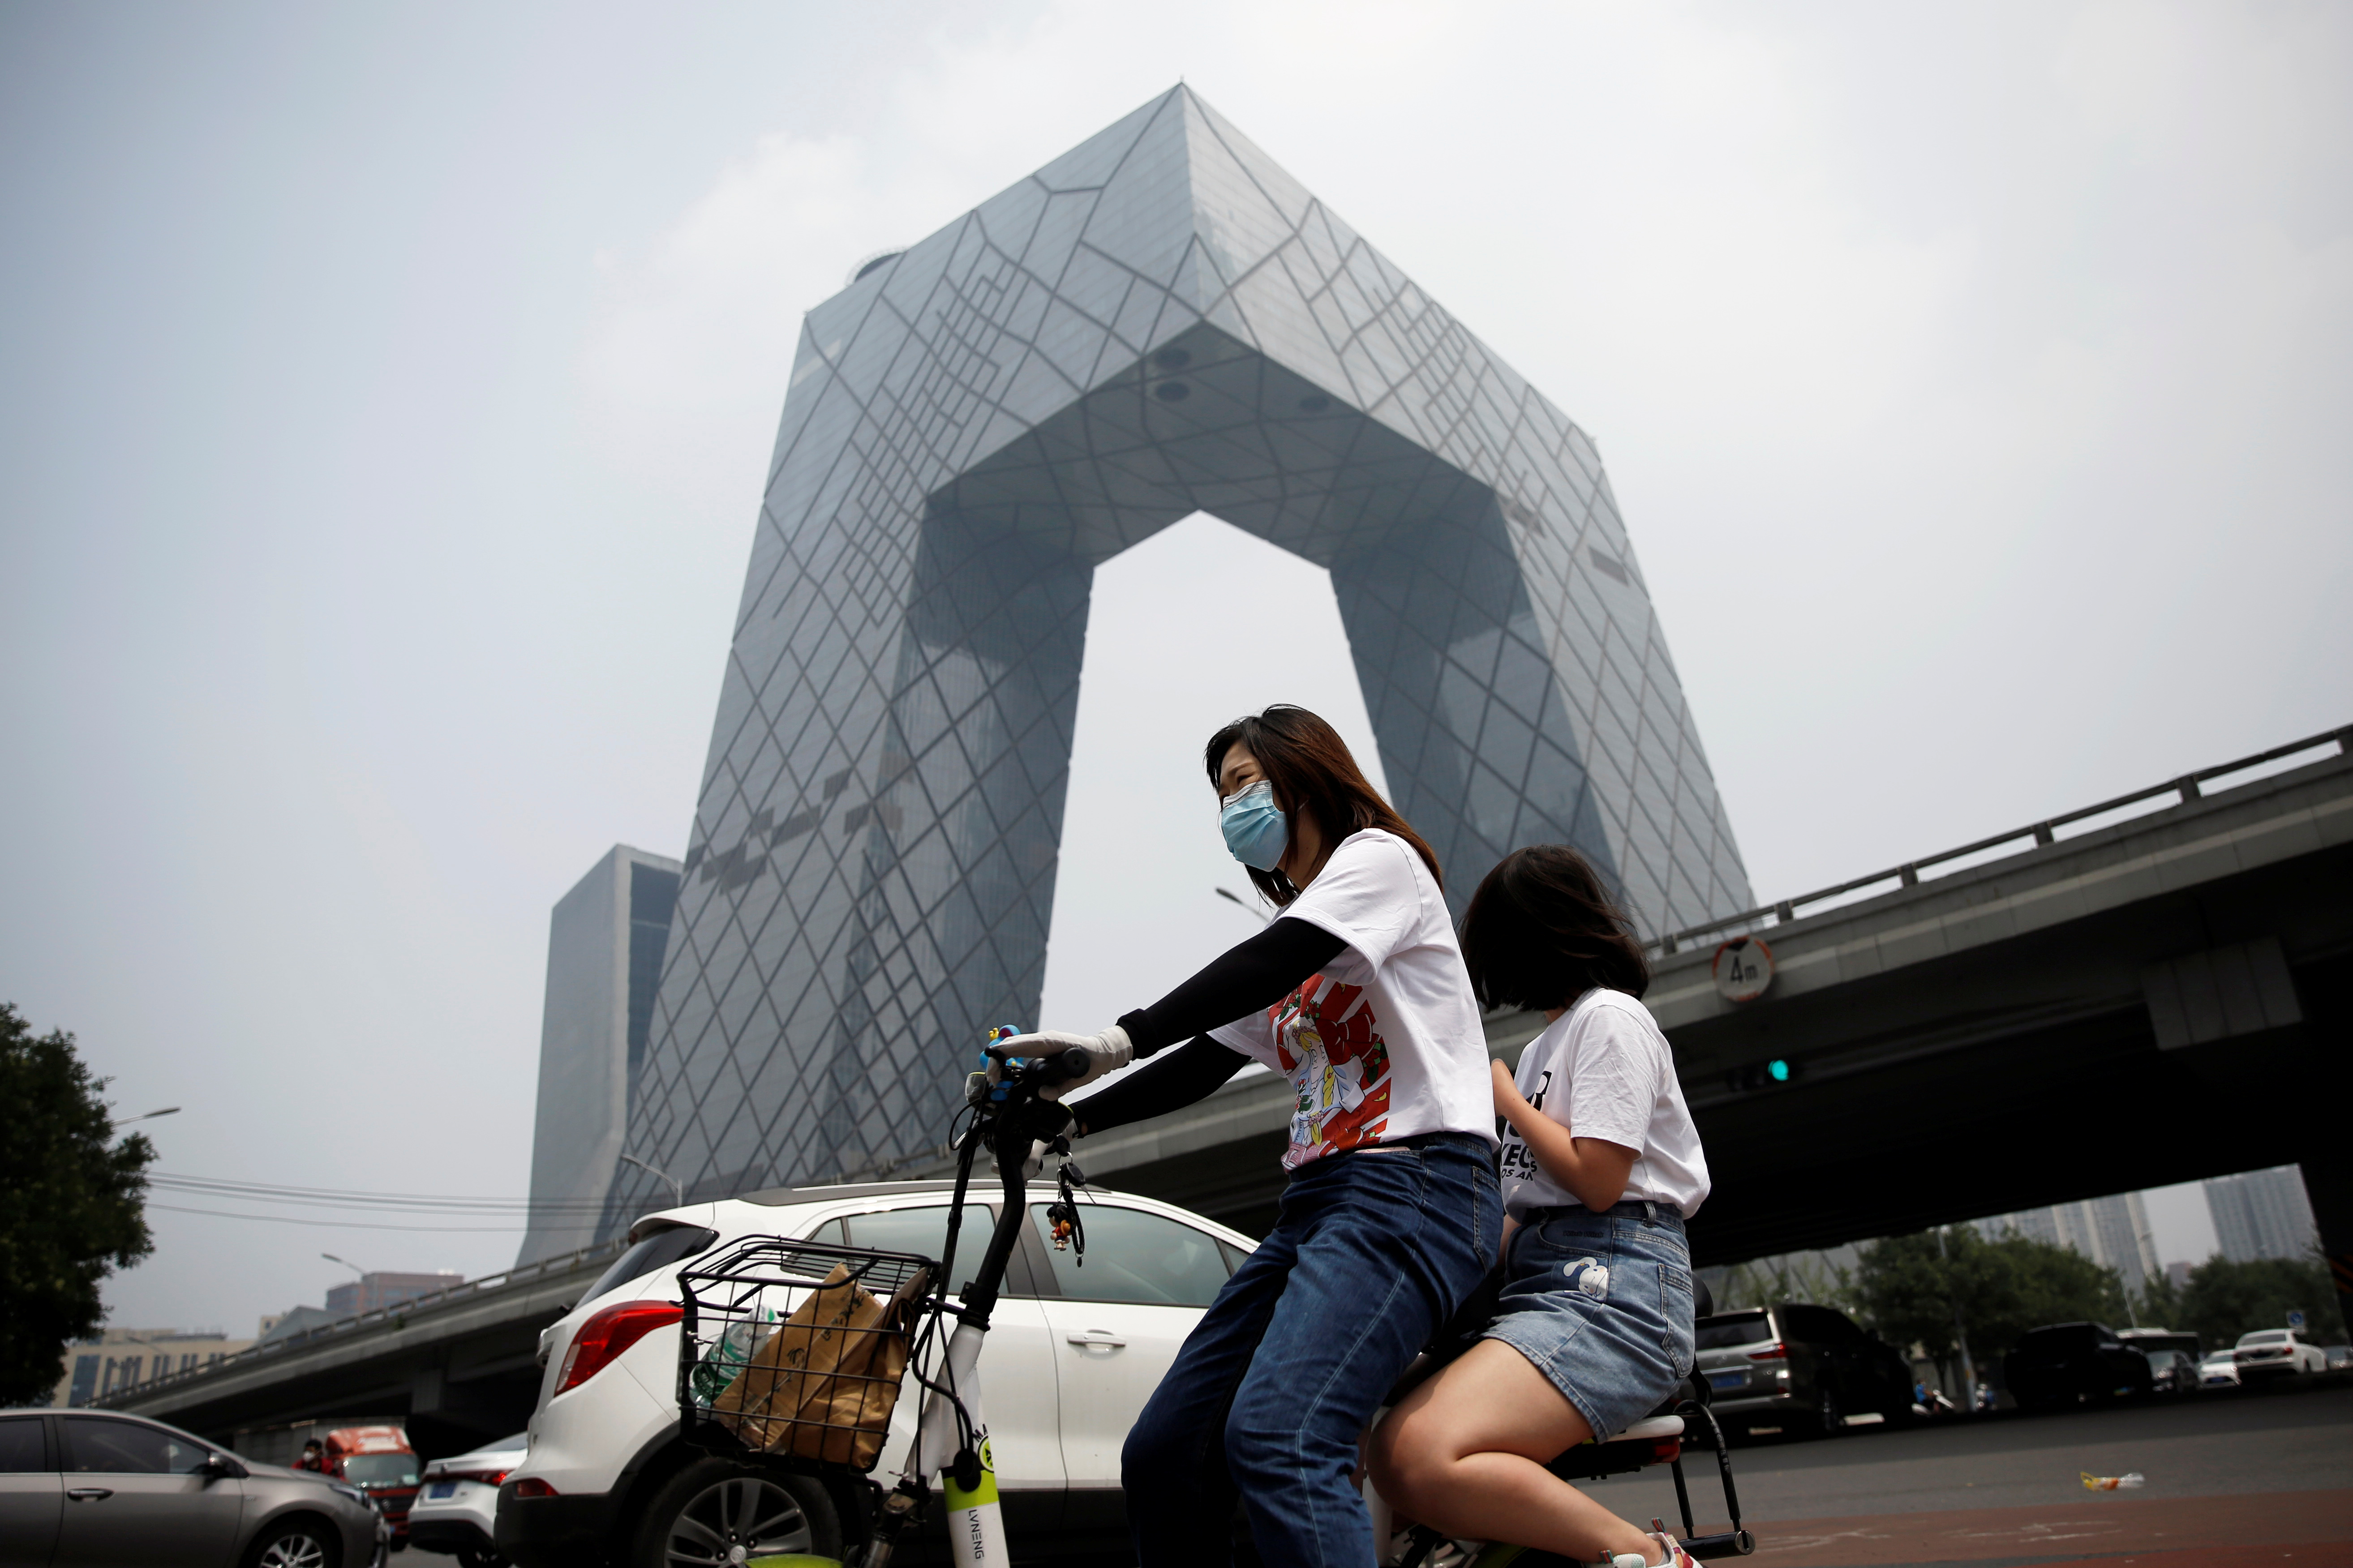 En pleine reprise, les émissions de CO2 ont baissé en Chine au troisième trimestre